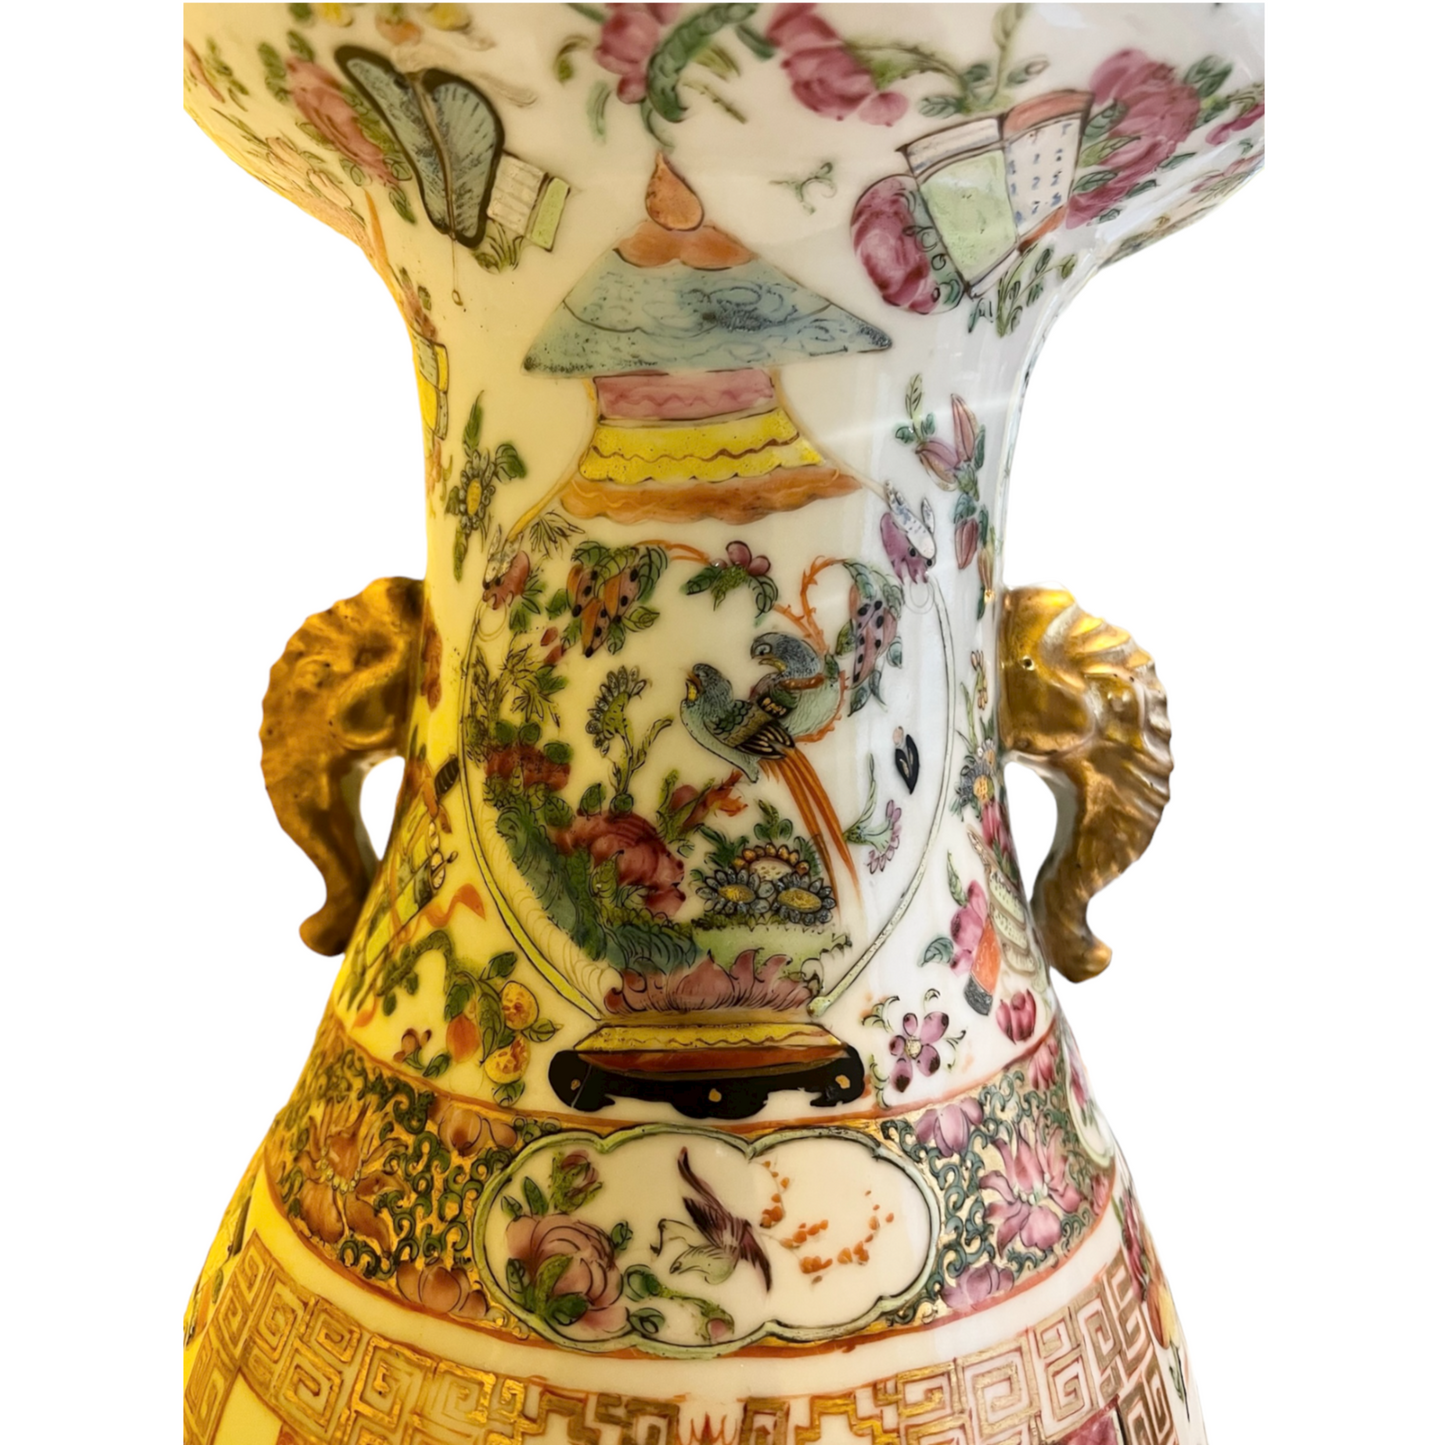 Qing 19th C Rose Medallion Hundred Antiques Porcelain Vase